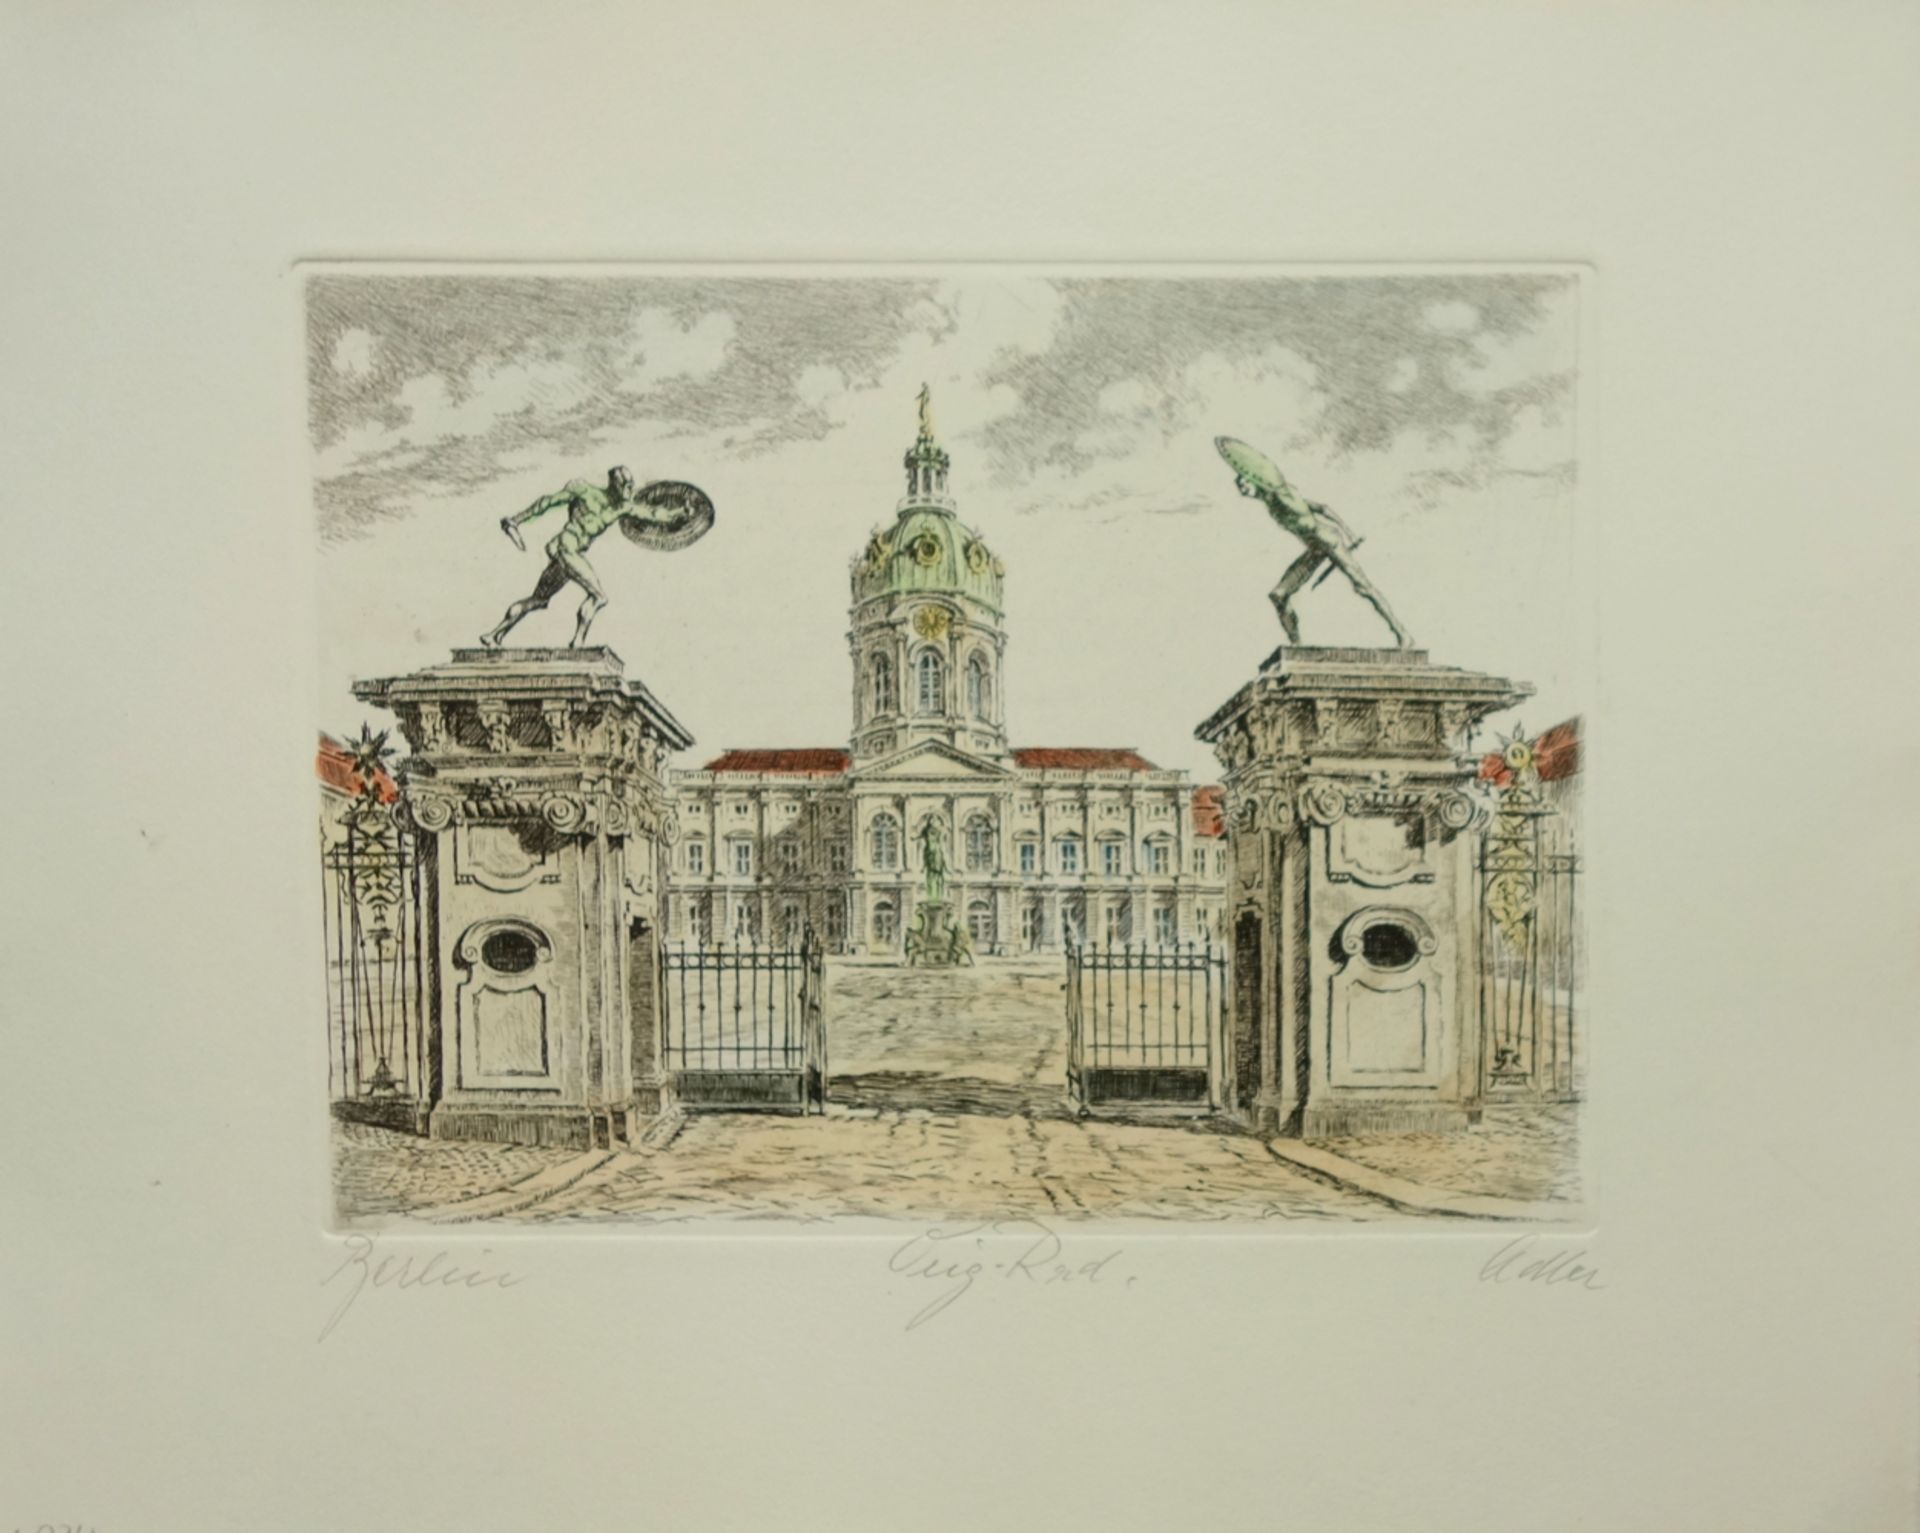 Richard Adler (1907, Berlin-1977, Düsseldorf), "Schloss Charlottenburg", kolorierte Radierung, unten